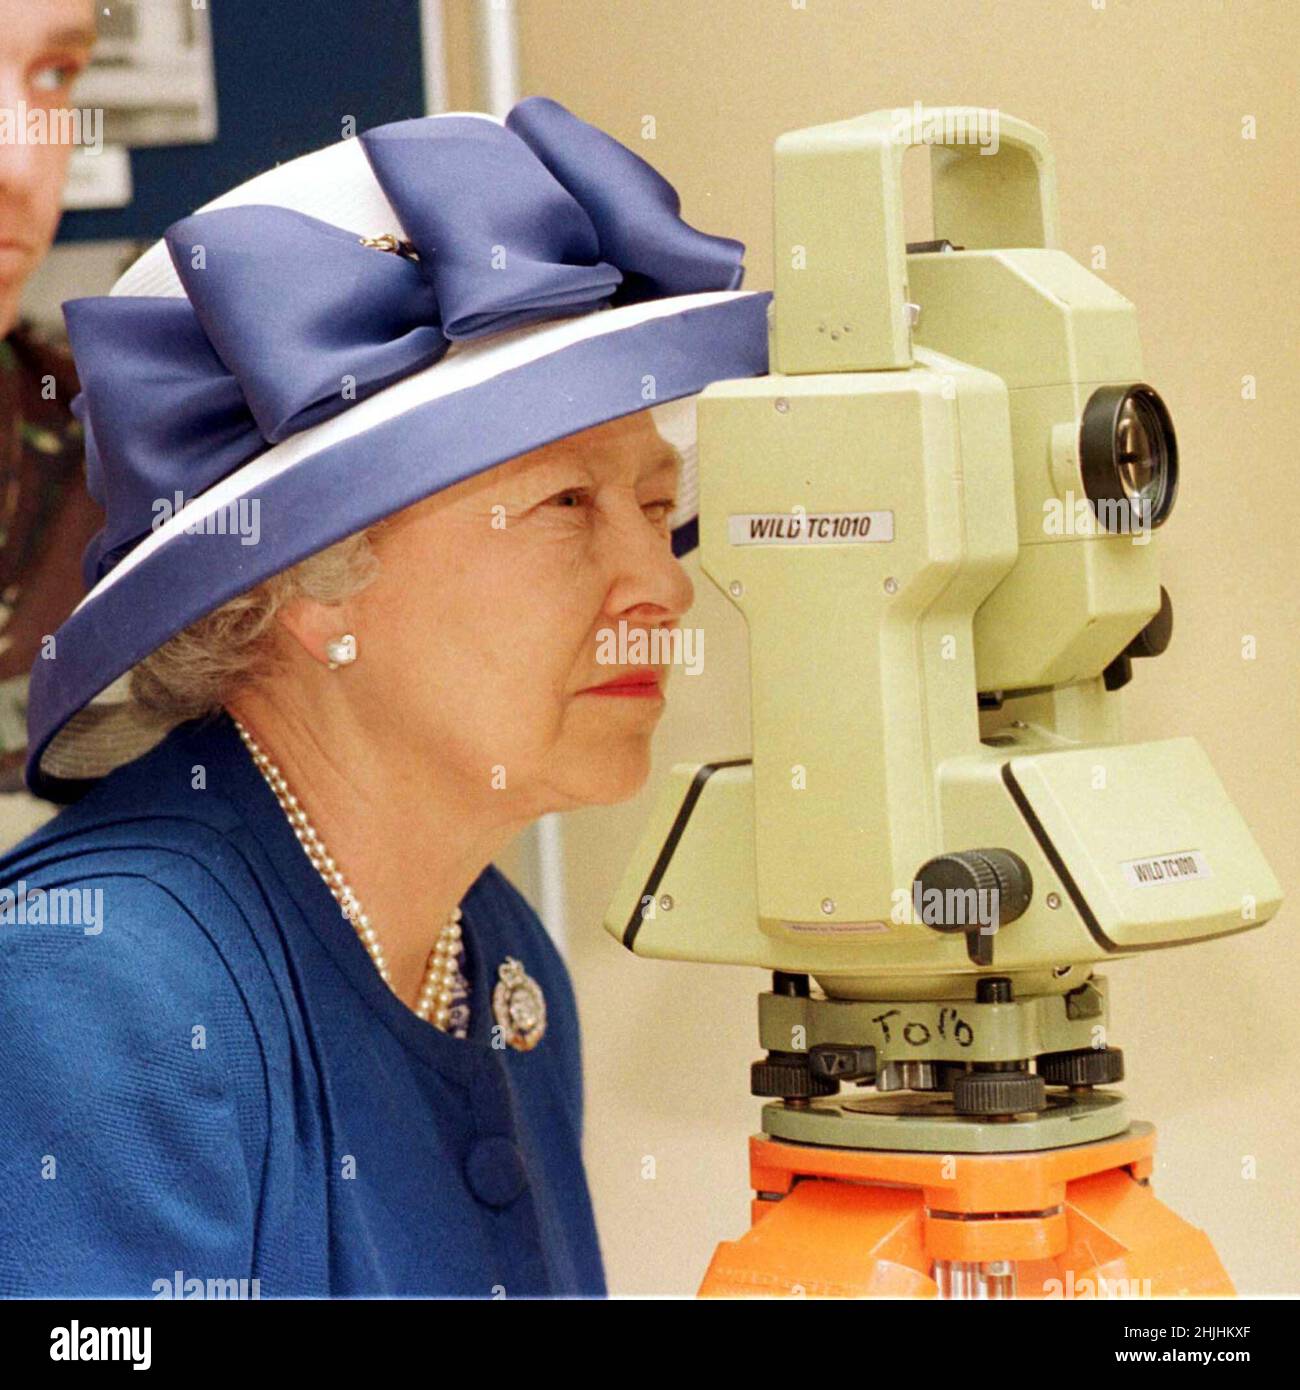 Photo du dossier datée du 26/06/98 de la reine Elizabeth II, colonel en chef du corps des Royal Engineers, regardant bien un théodolite lors de sa visite au groupe d'ingénieurs d'arpentage de 42 à la caserne Denison à Hermitage.Date de publication : dimanche 30 janvier 2022. Banque D'Images